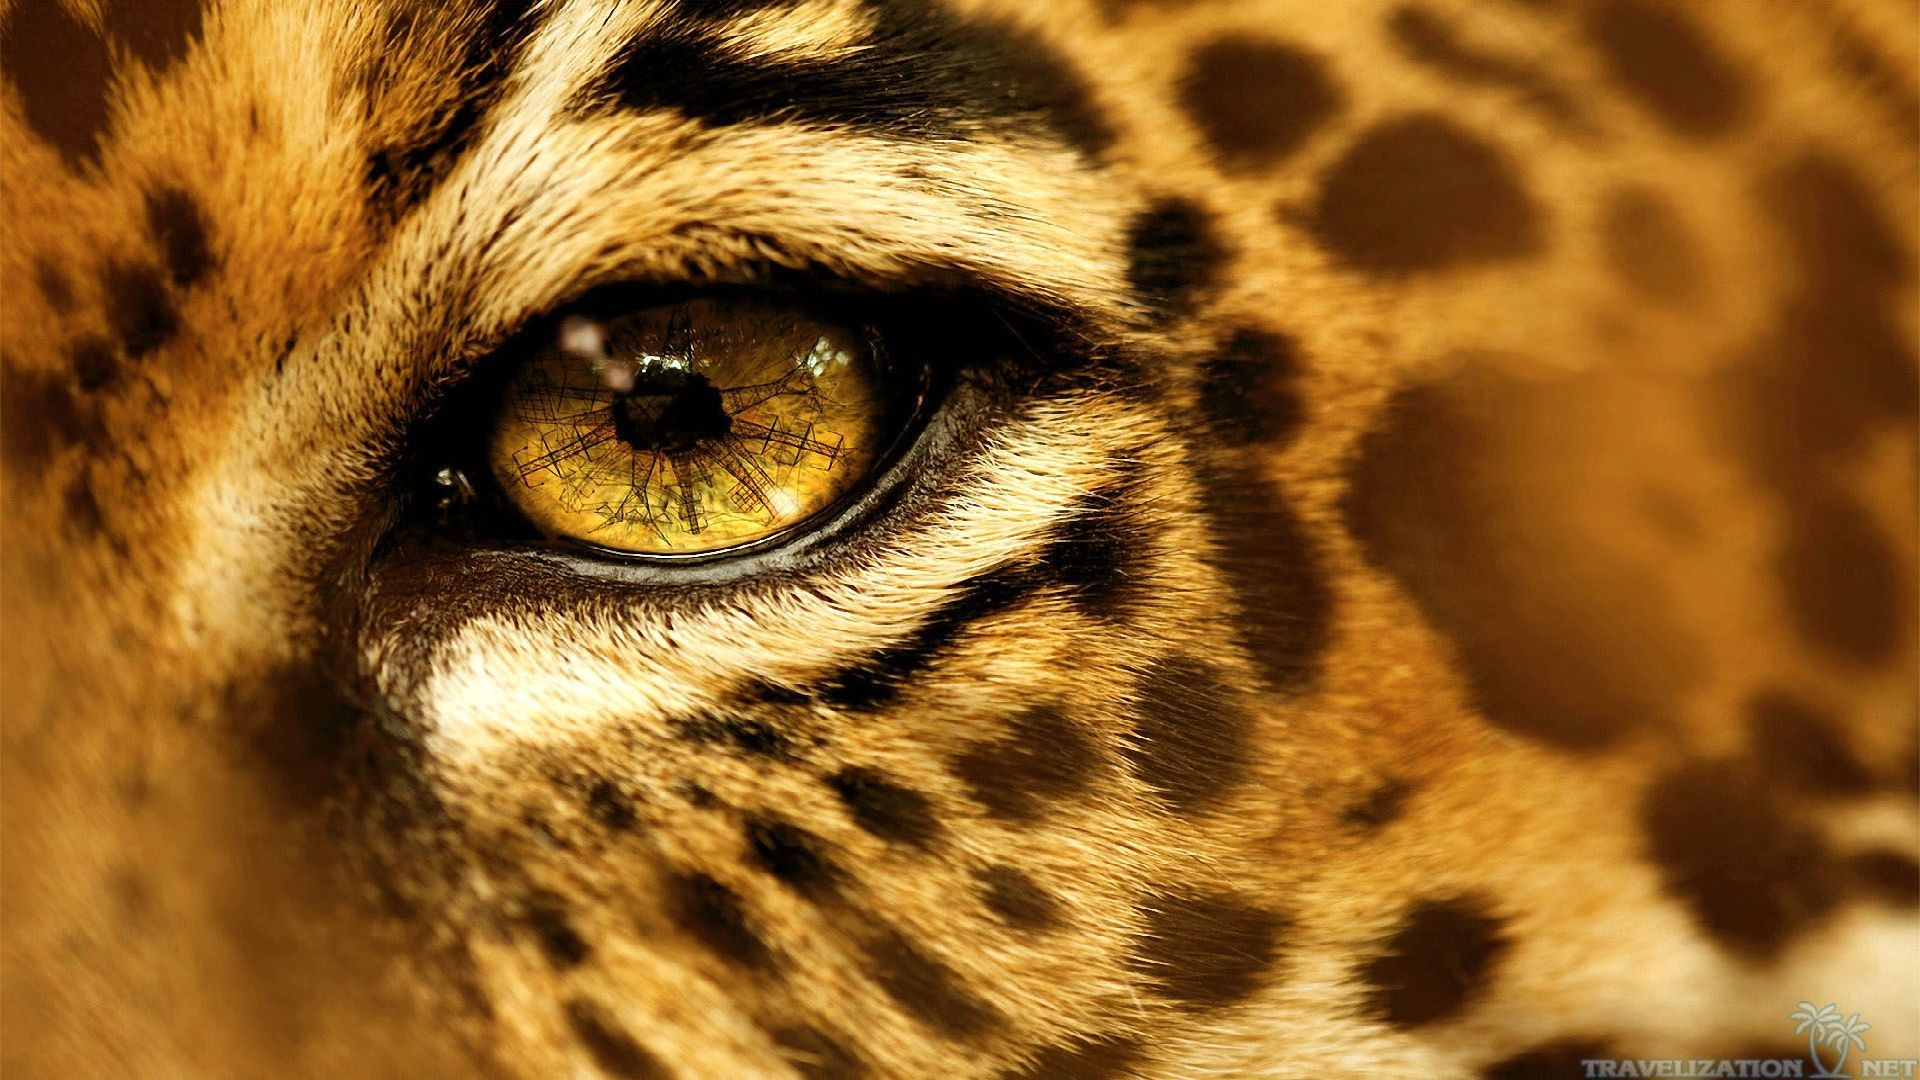 General 1920x1080 animals eyes jaguars mammals closeup big cats reflection